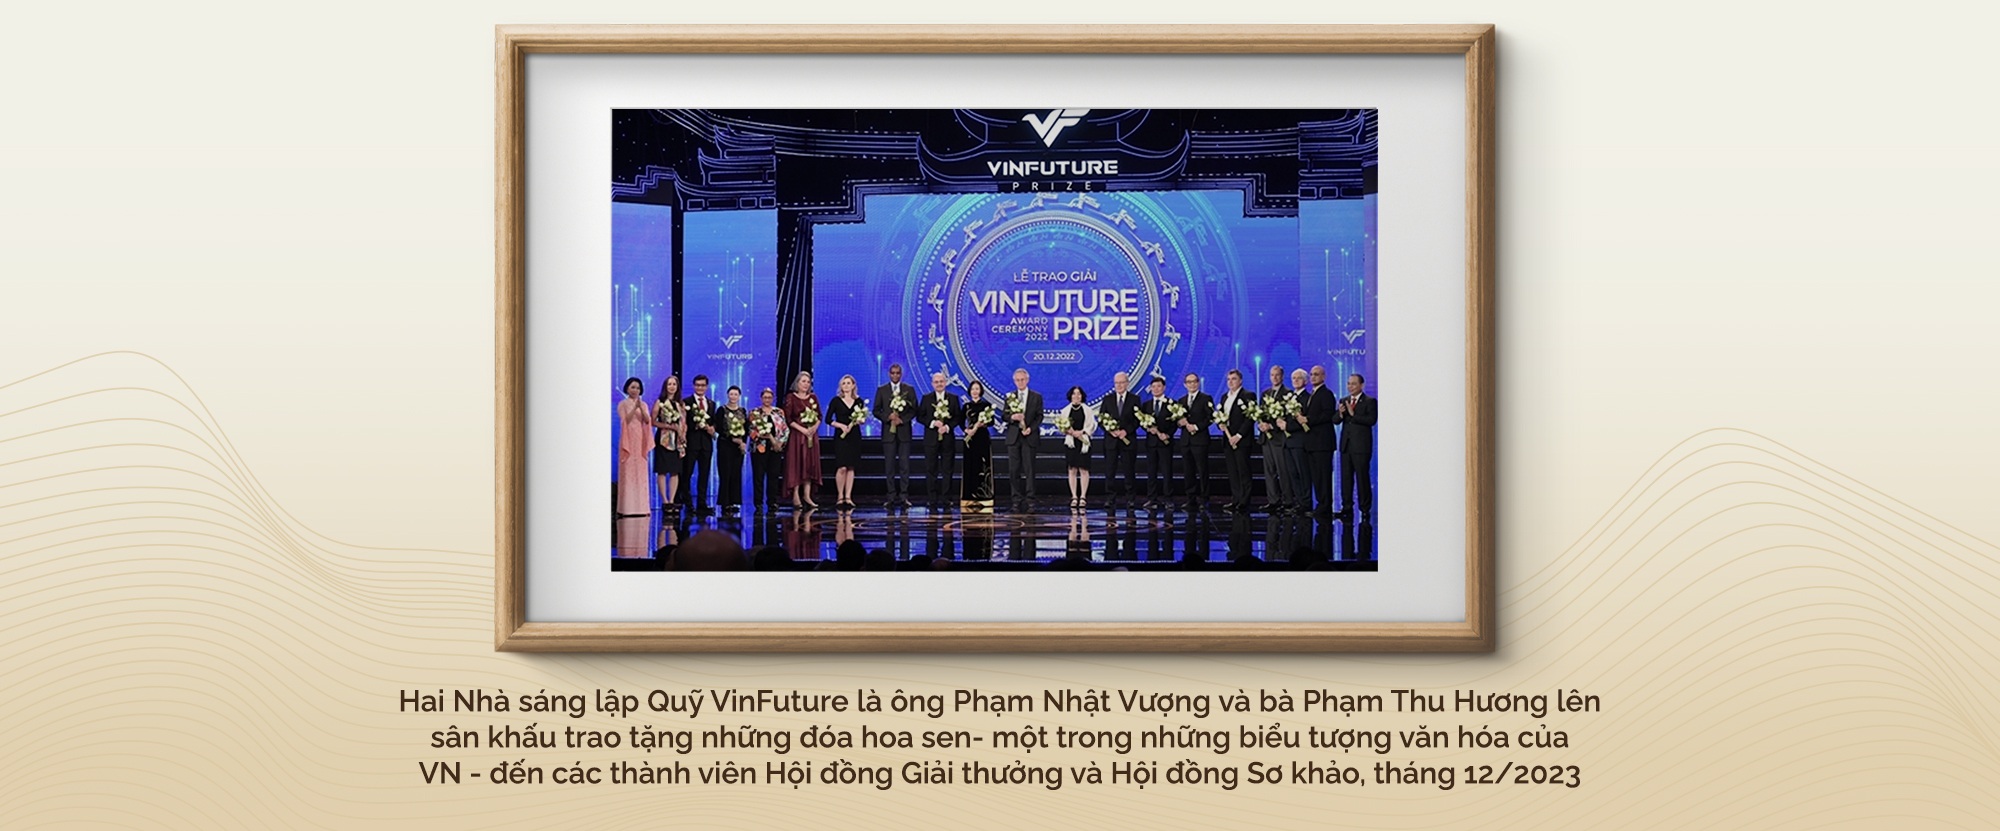 Nữ TS Việt trong top ảnh hưởng thế giới, điều hành Quỹ khoa học triệu đô - 14